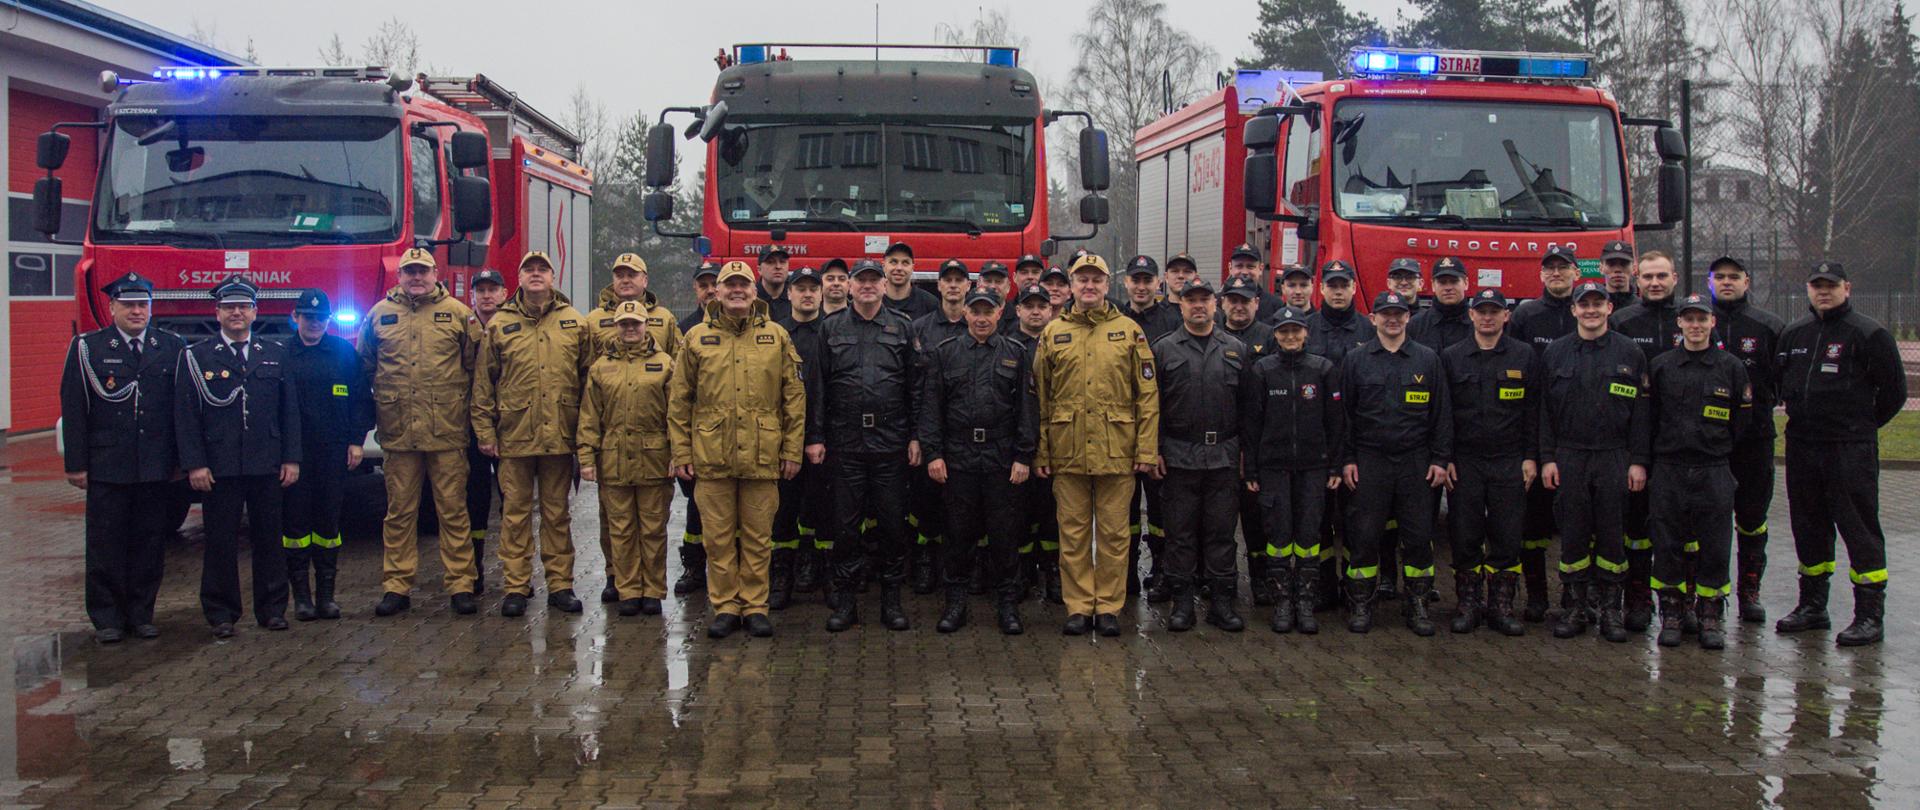 Na zdjęciu strażacy w mundurach koloru czarnego i piaskowego stoją na tle samochodów strażackich.